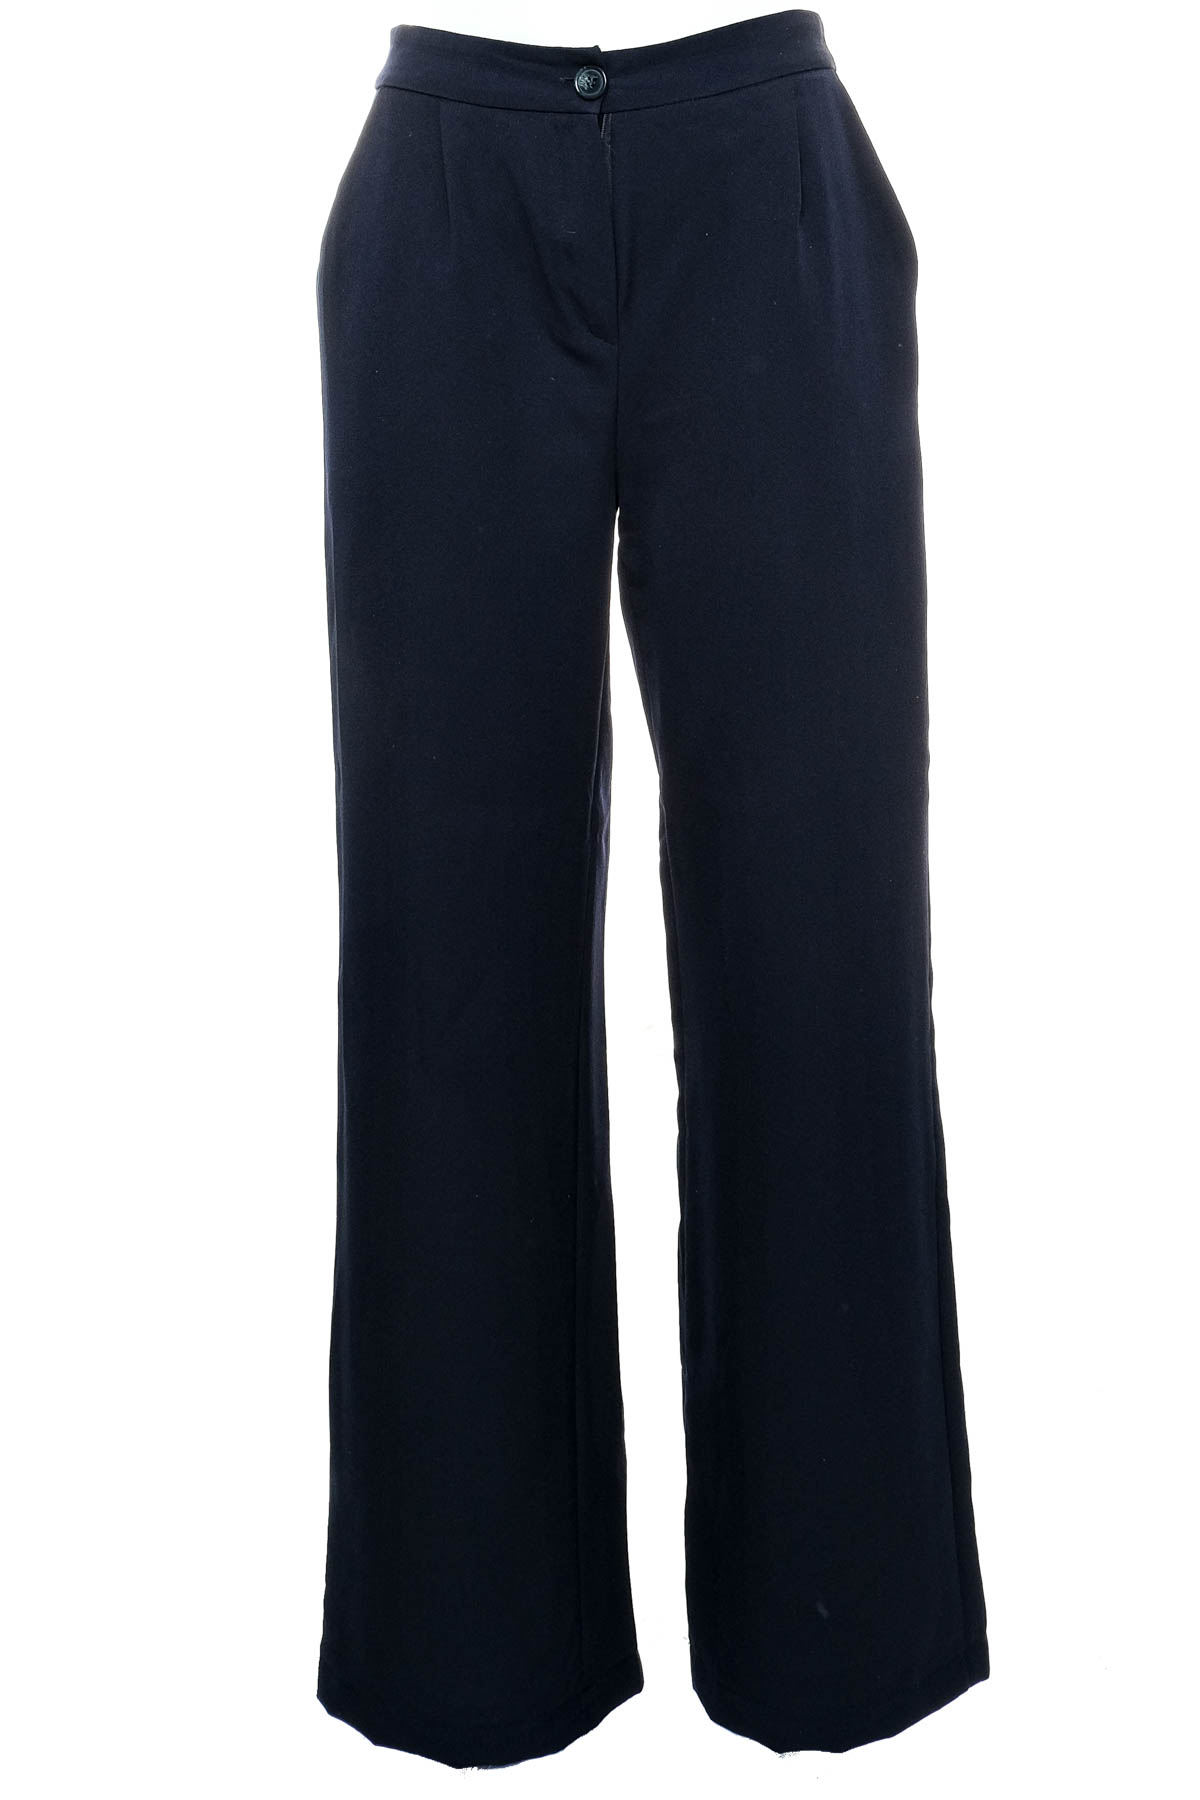 Women's trousers - TRENDYOL - 0